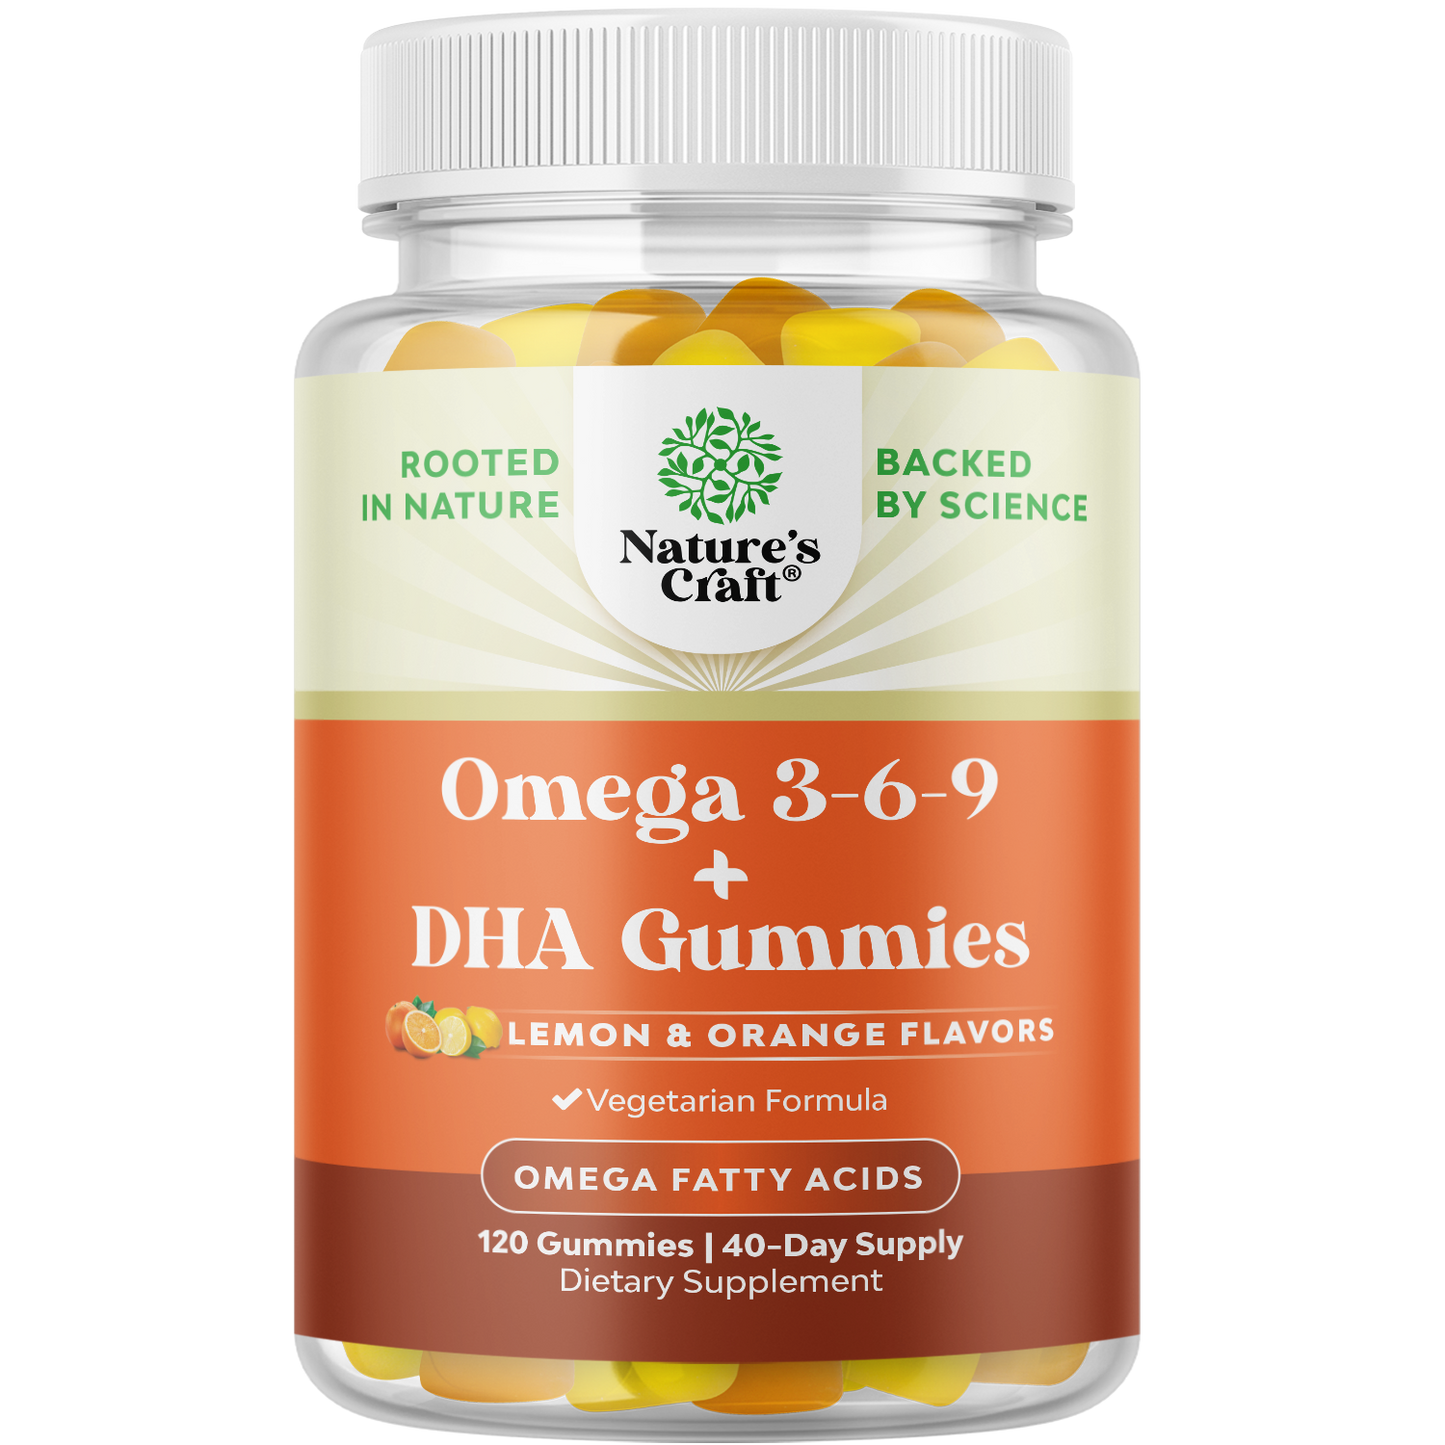 Omega 3-6-9 + DHA Gummies